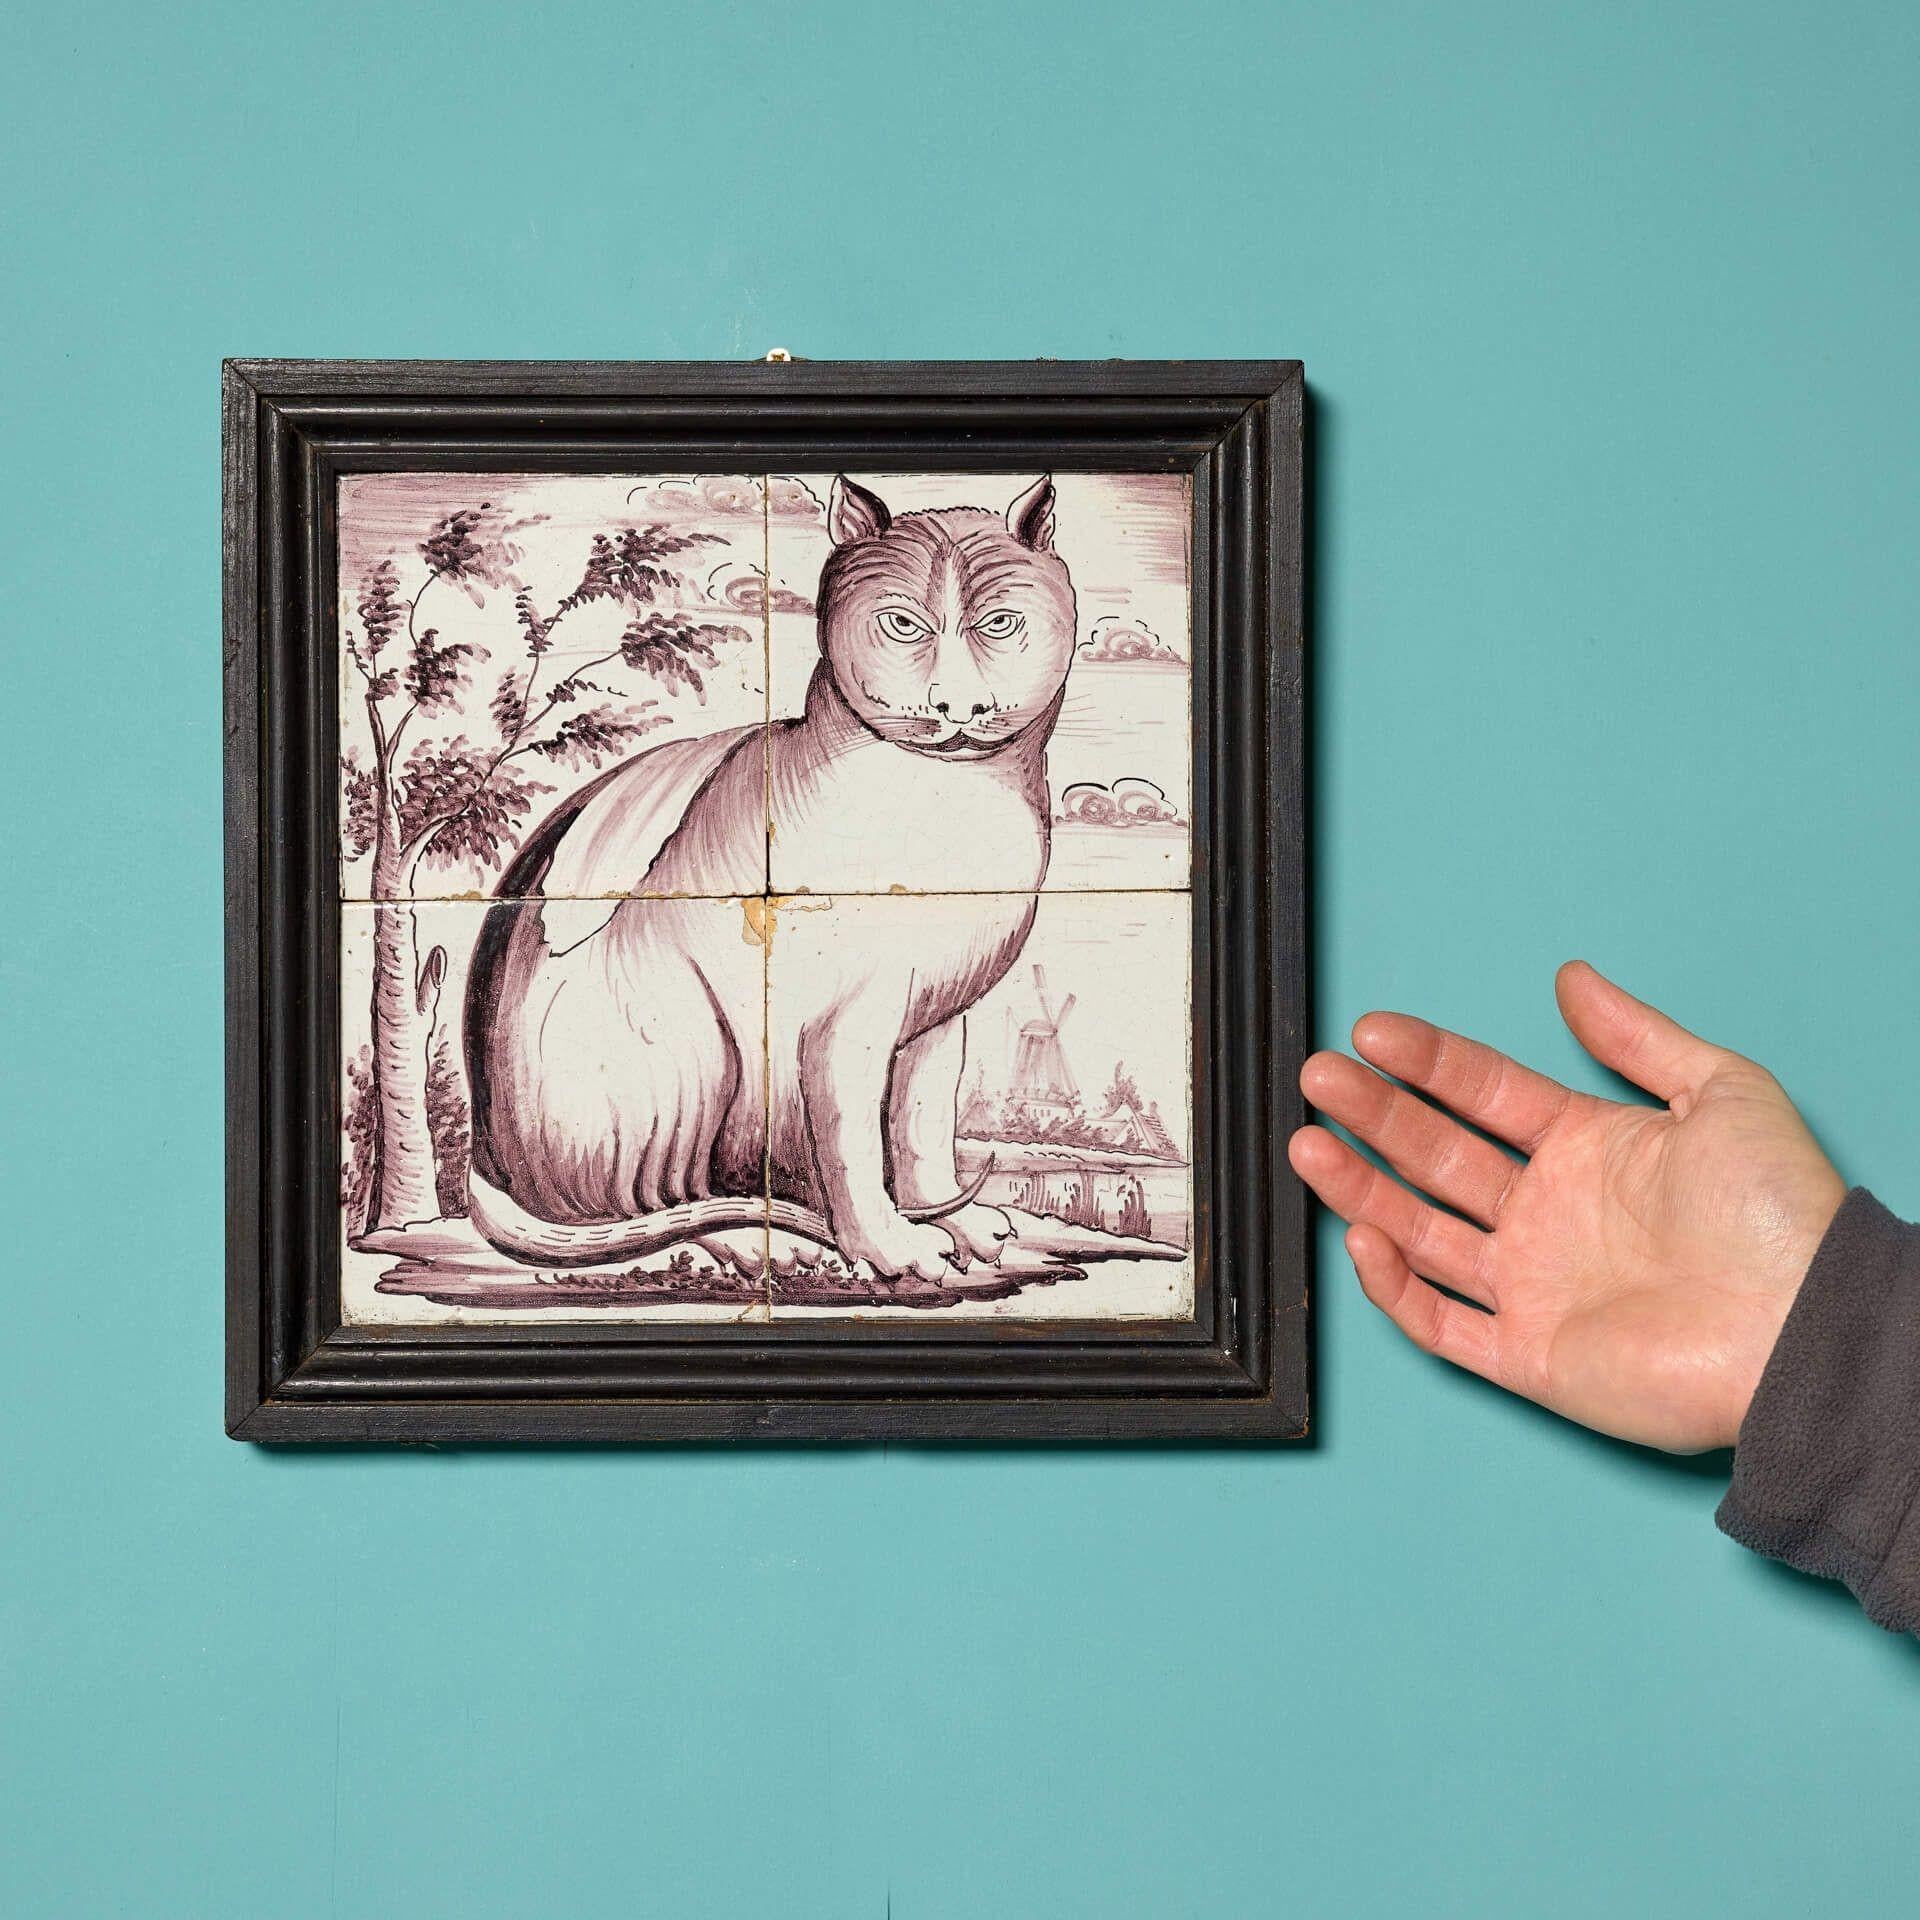 Diese antike gerahmte Fliesentafel, die eine Katze in einer Landschaft darstellt und aus dem Nachlass von Dame Barbara Mary Quant stammt, ist ein wahrer Fund. In einem Rahmen aufgehängt, bilden die Kacheln ein beeindruckendes Kunstwerk, das sowohl